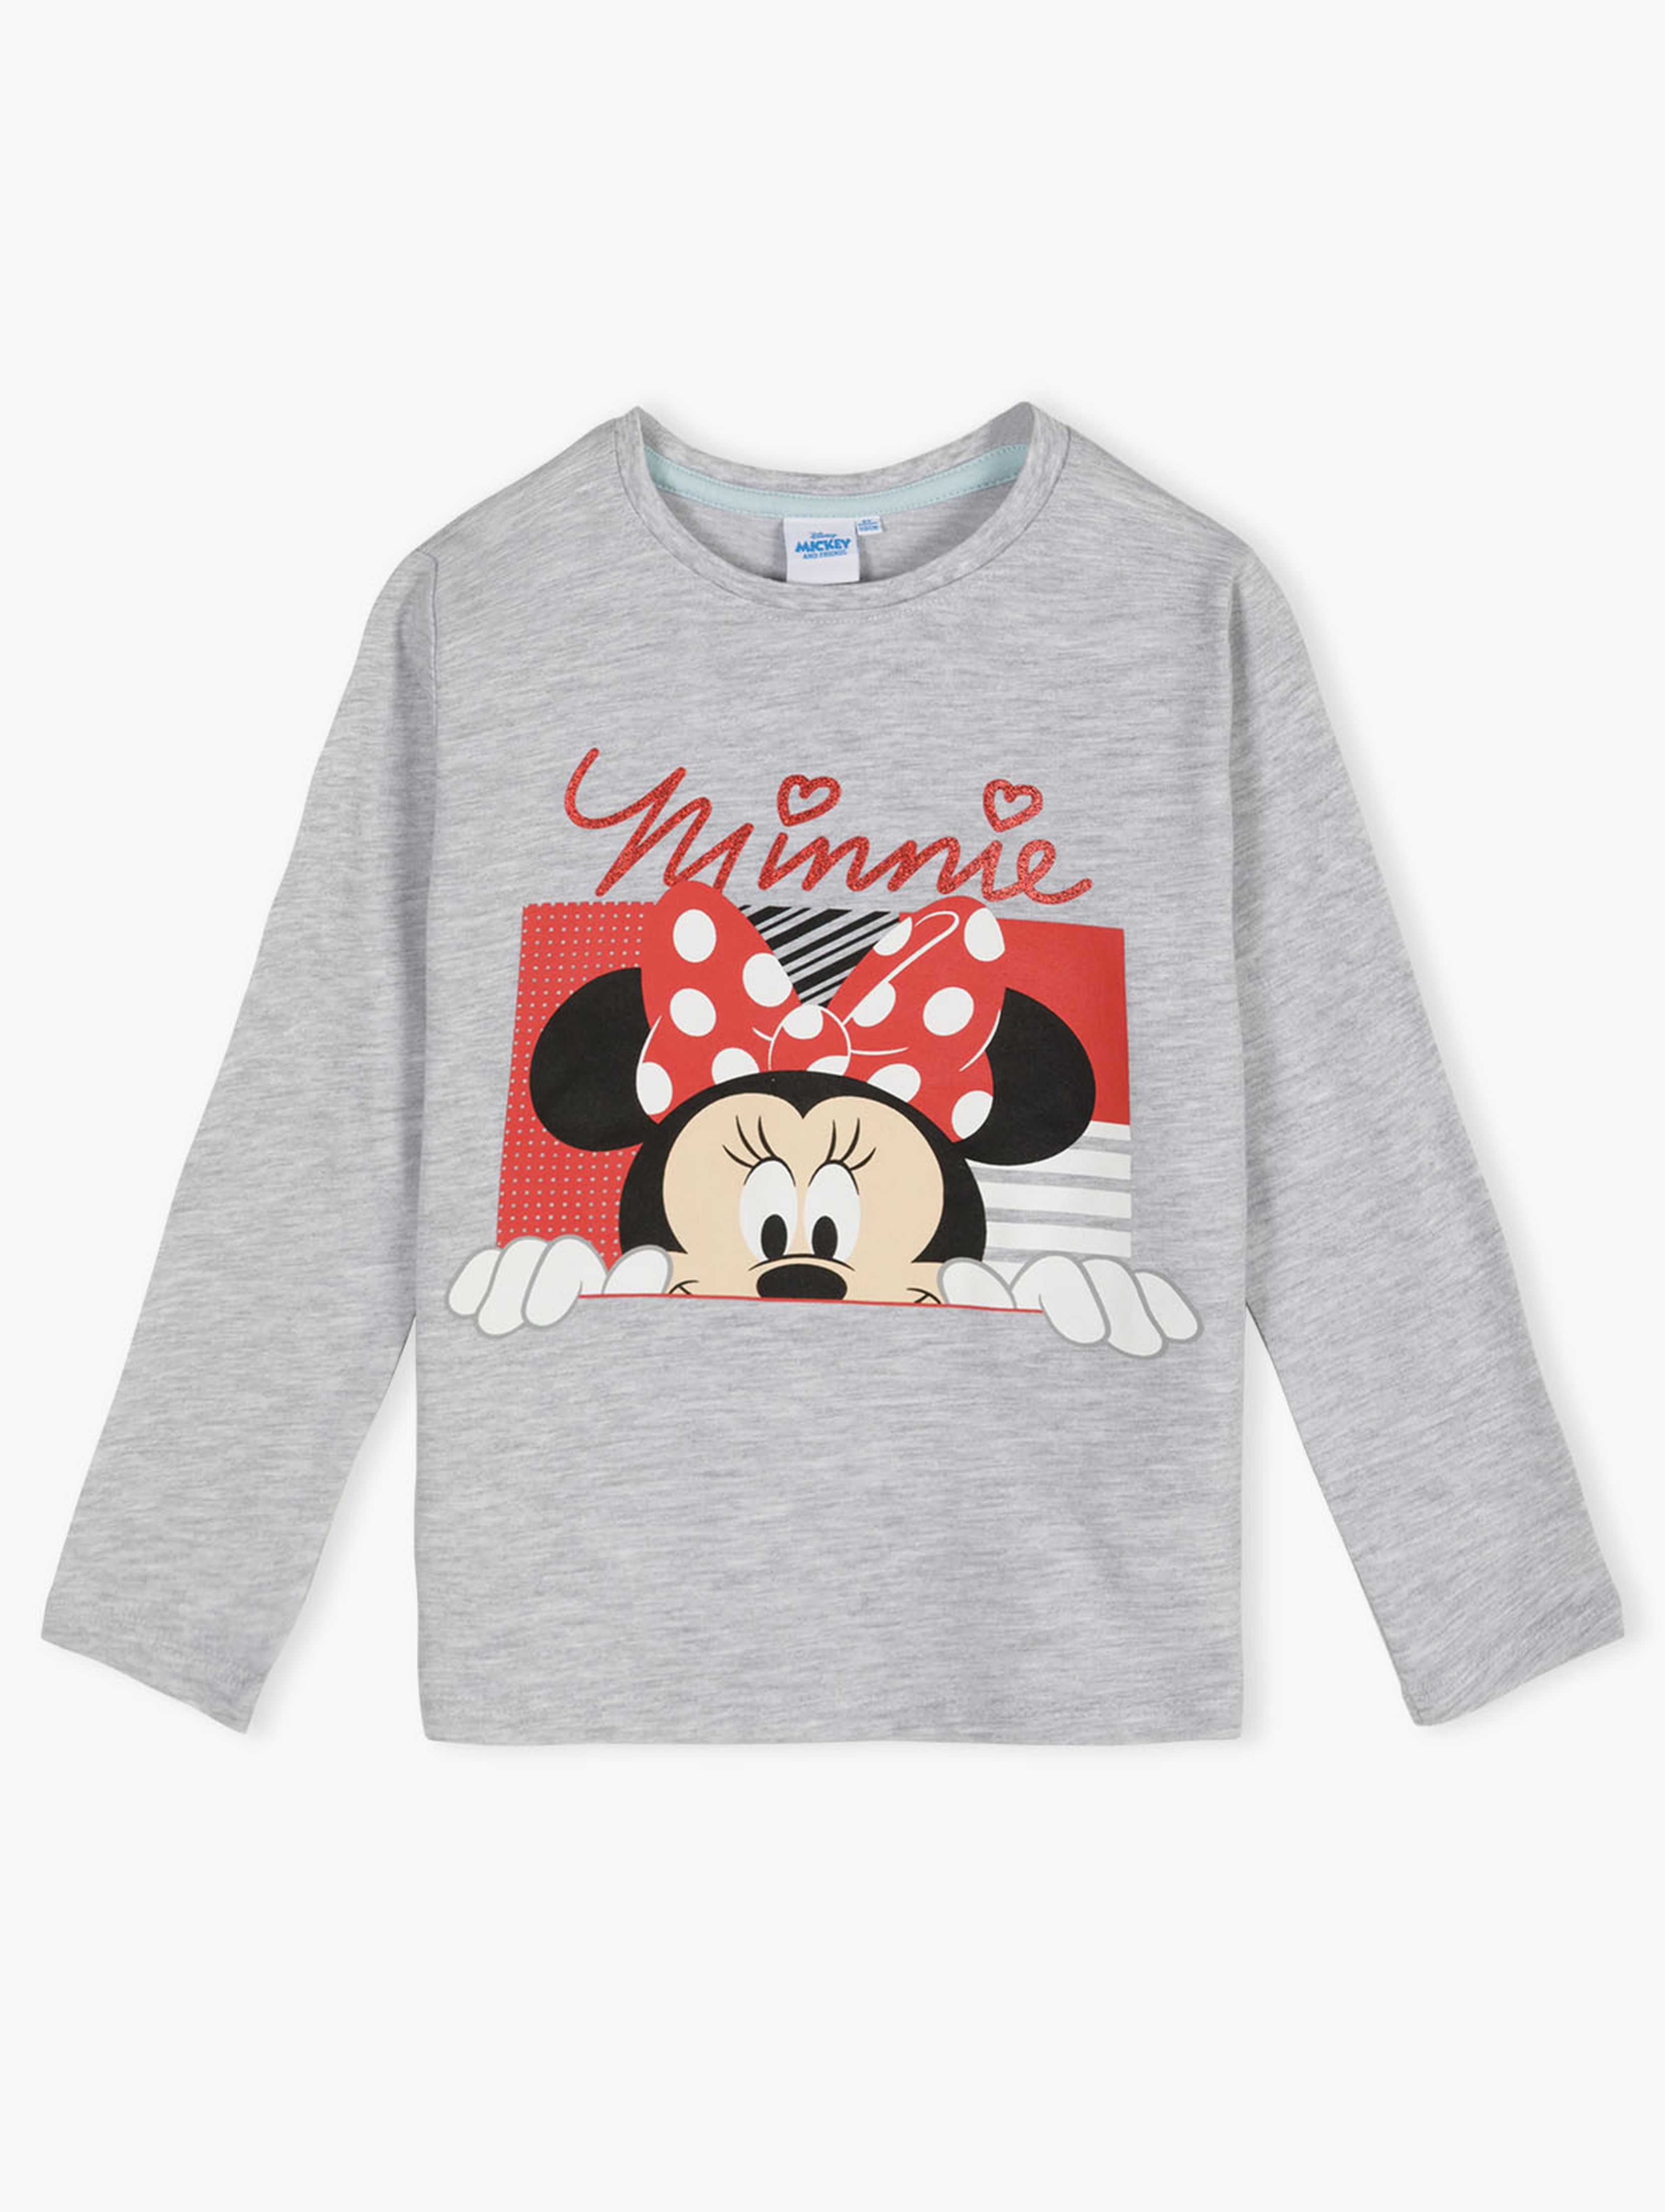 Bawełniana bluzka dla dziewczynki z Myszką Minnie